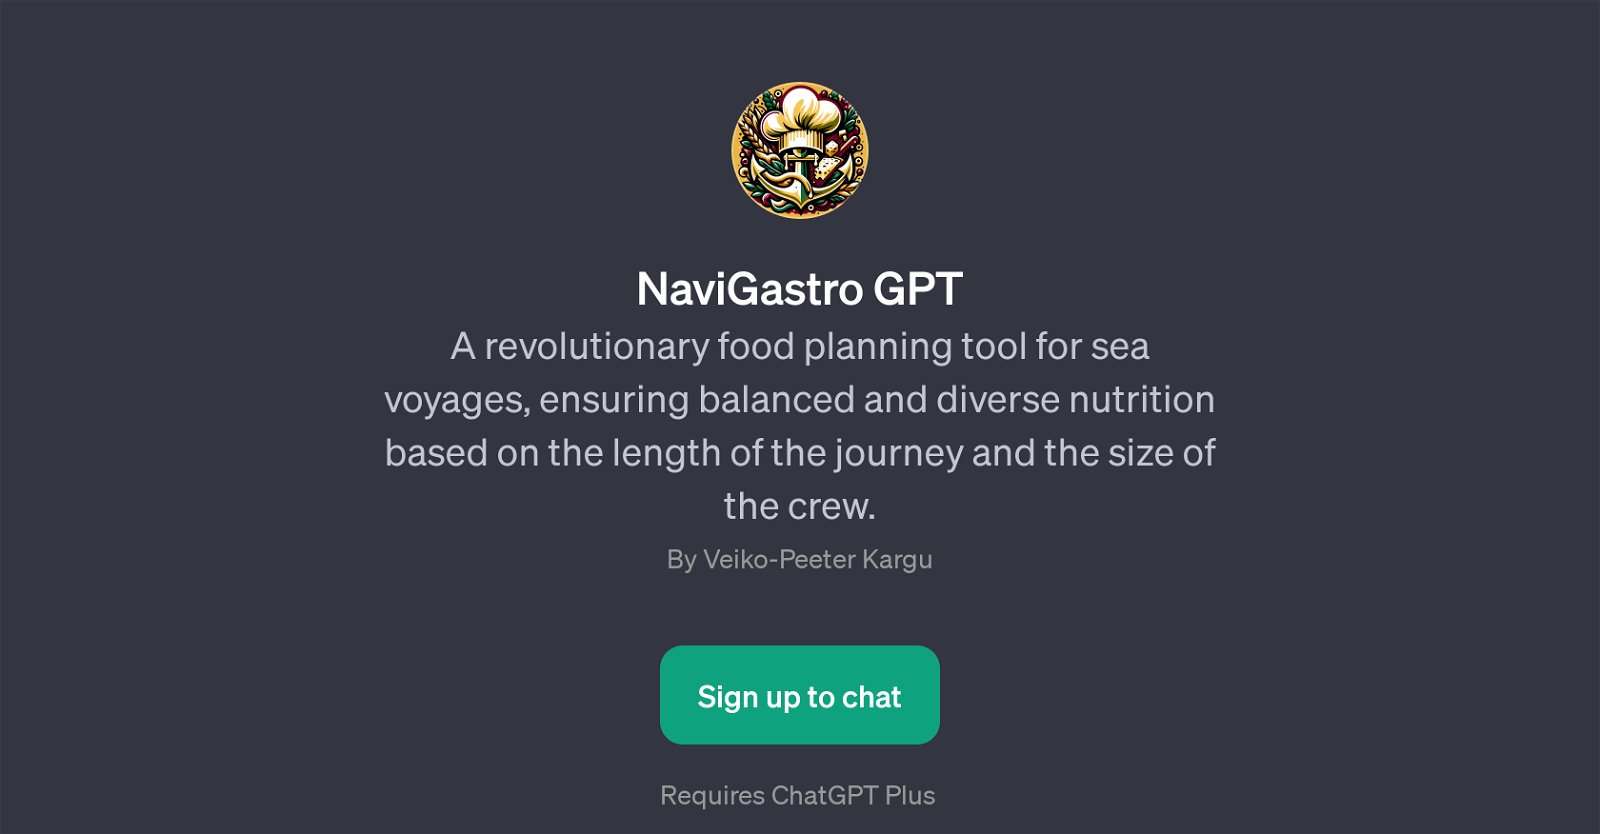 NaviGastro GPT website